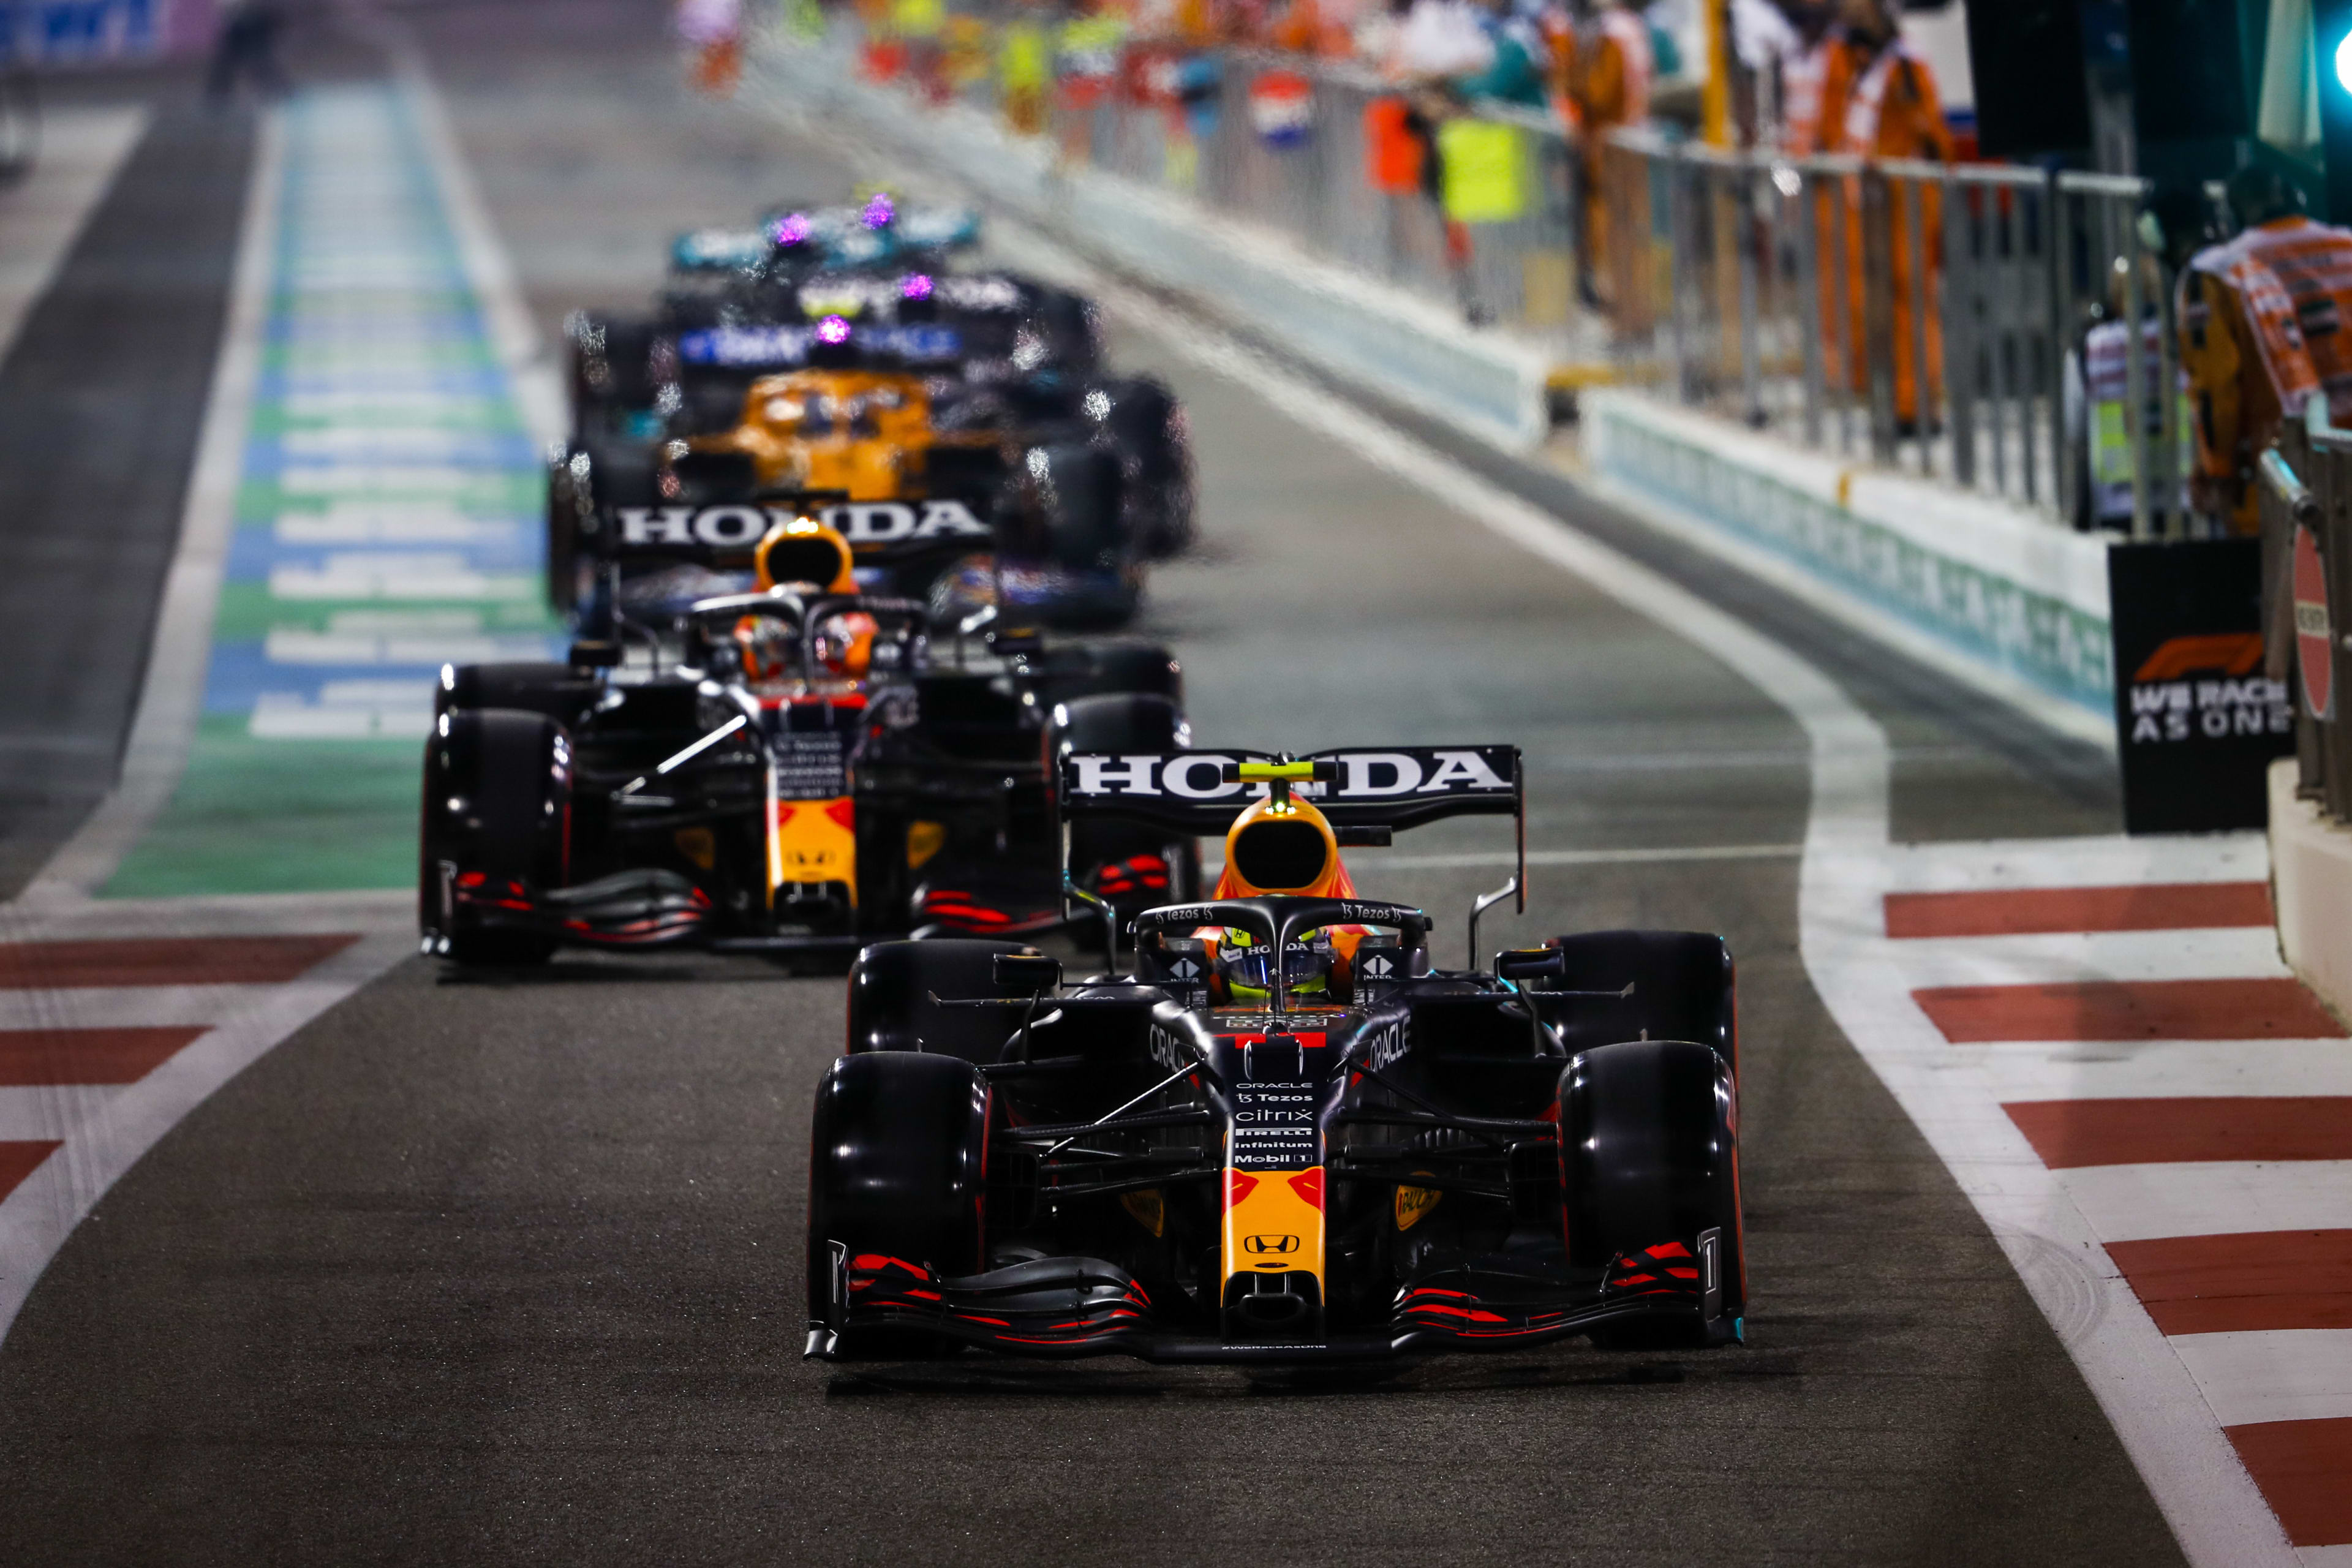 Formule 1 scherpt regels voor politieke uitingen coureurs aan